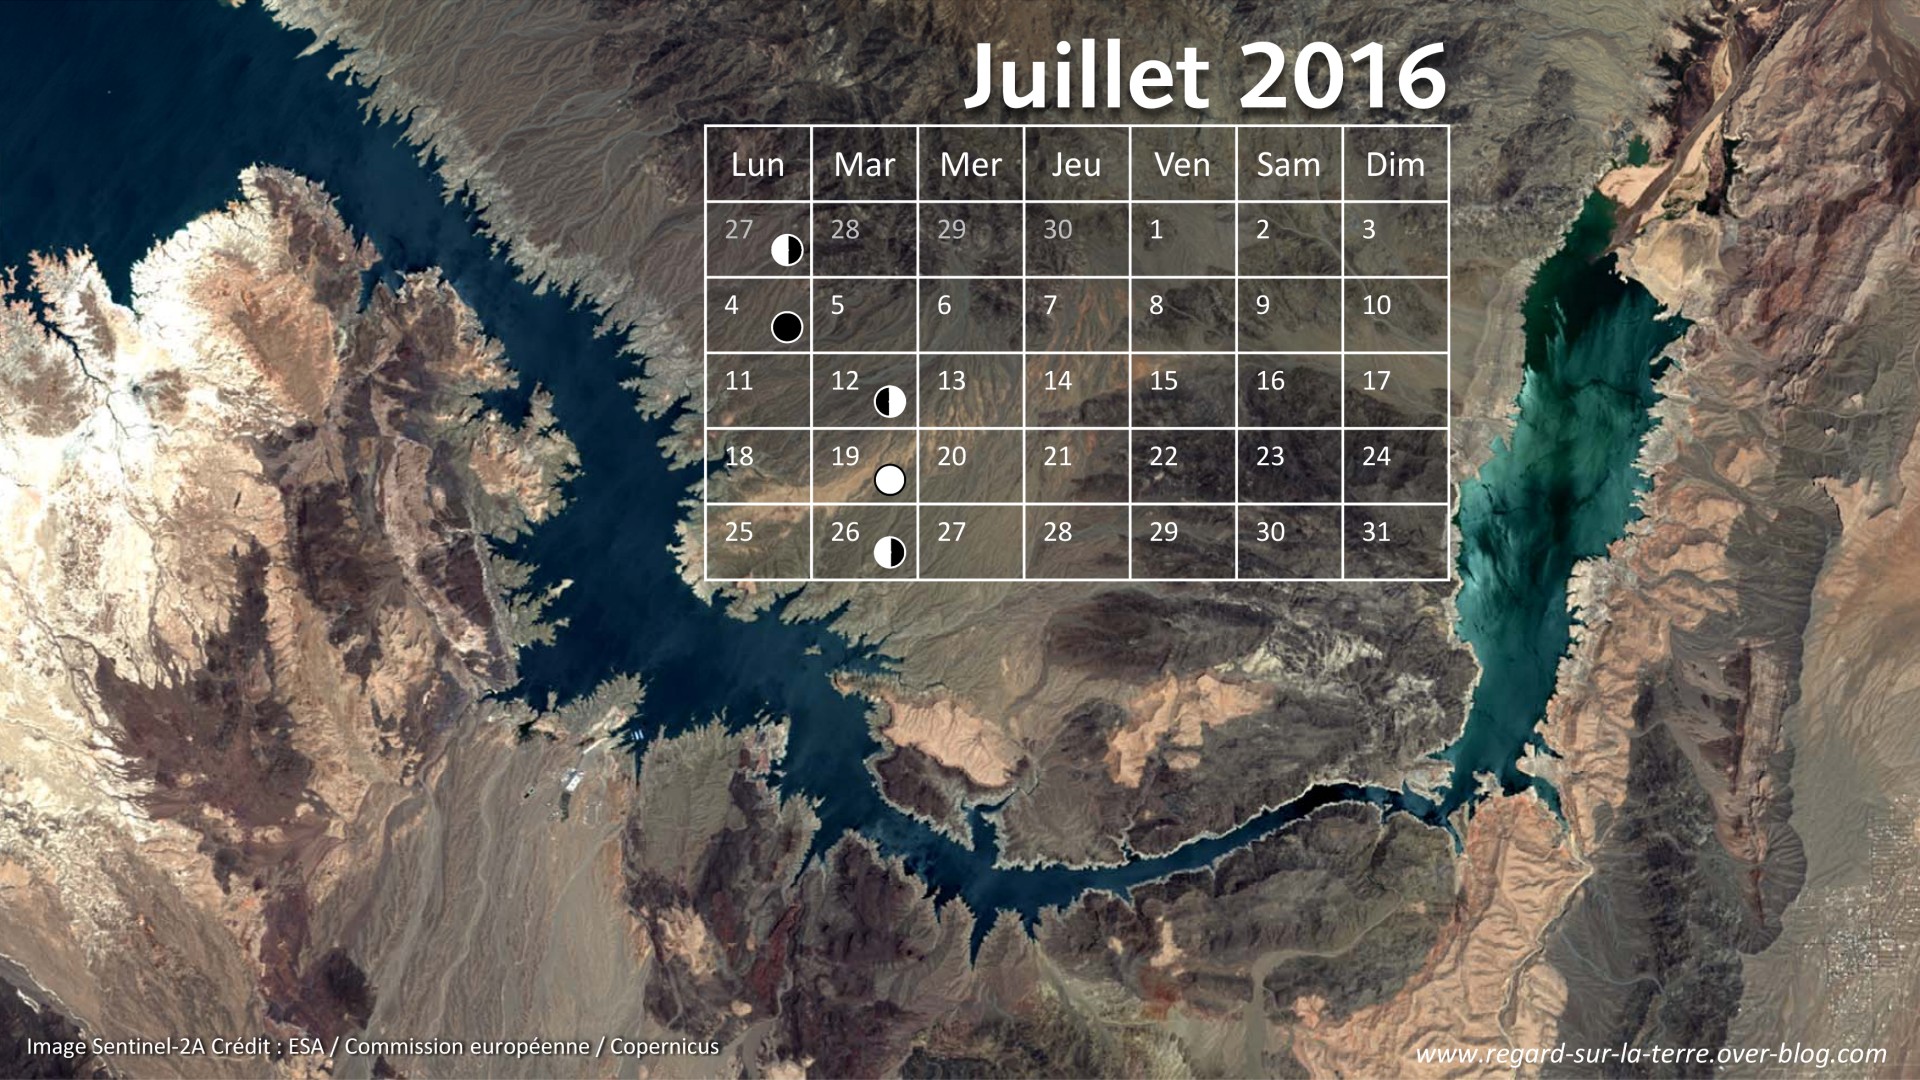 Calendrier spatial - Juillet 2016 - Lac Mead - Las Vegas - Sentinel-2 - Copernicus - ESA - Commission européenne